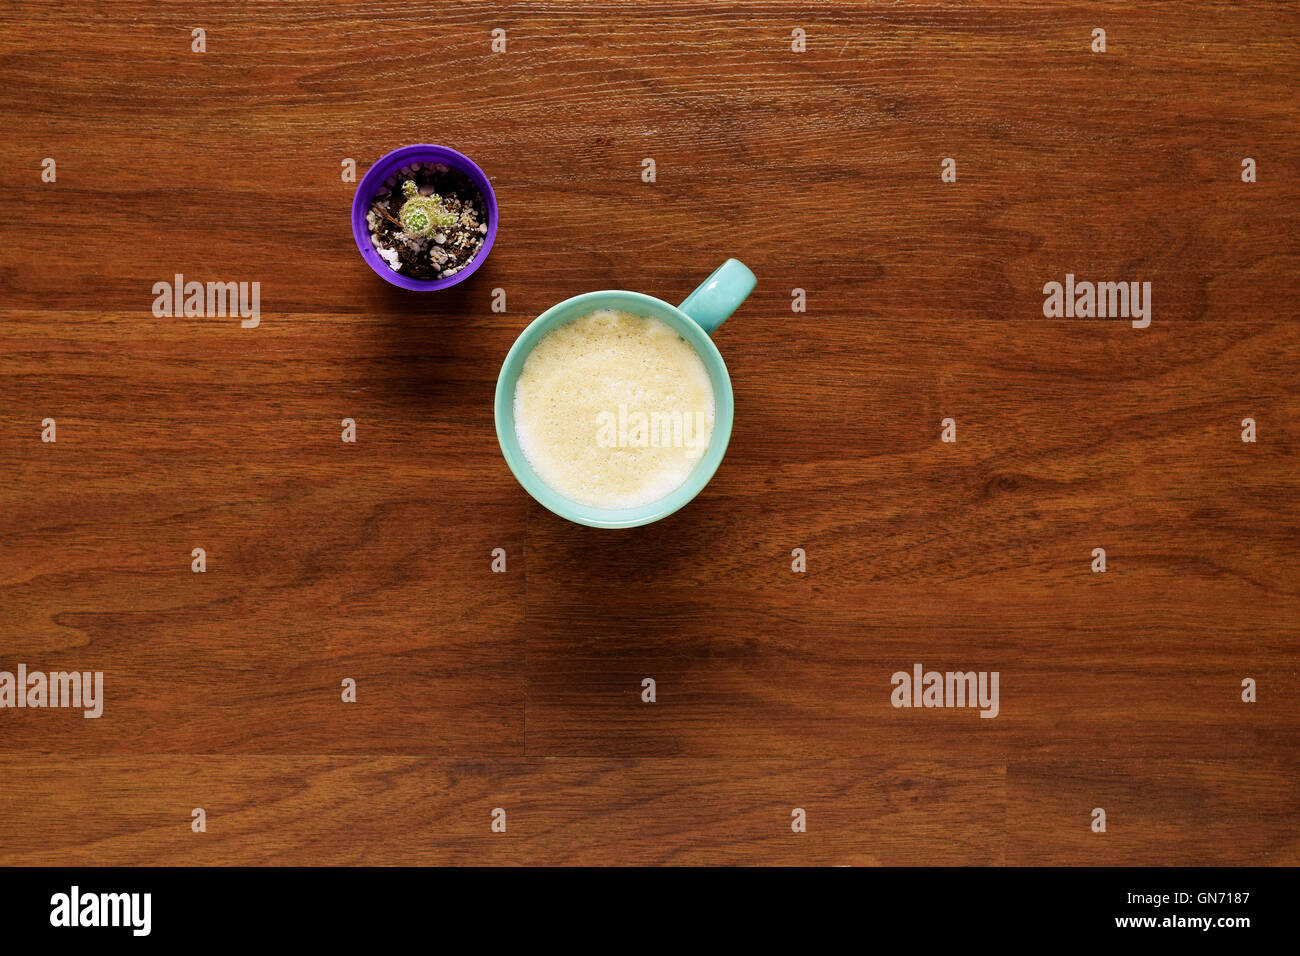 Vue de dessus de tasse de café sur une table en bois. Pause au travail, style de concept. Banque D'Images